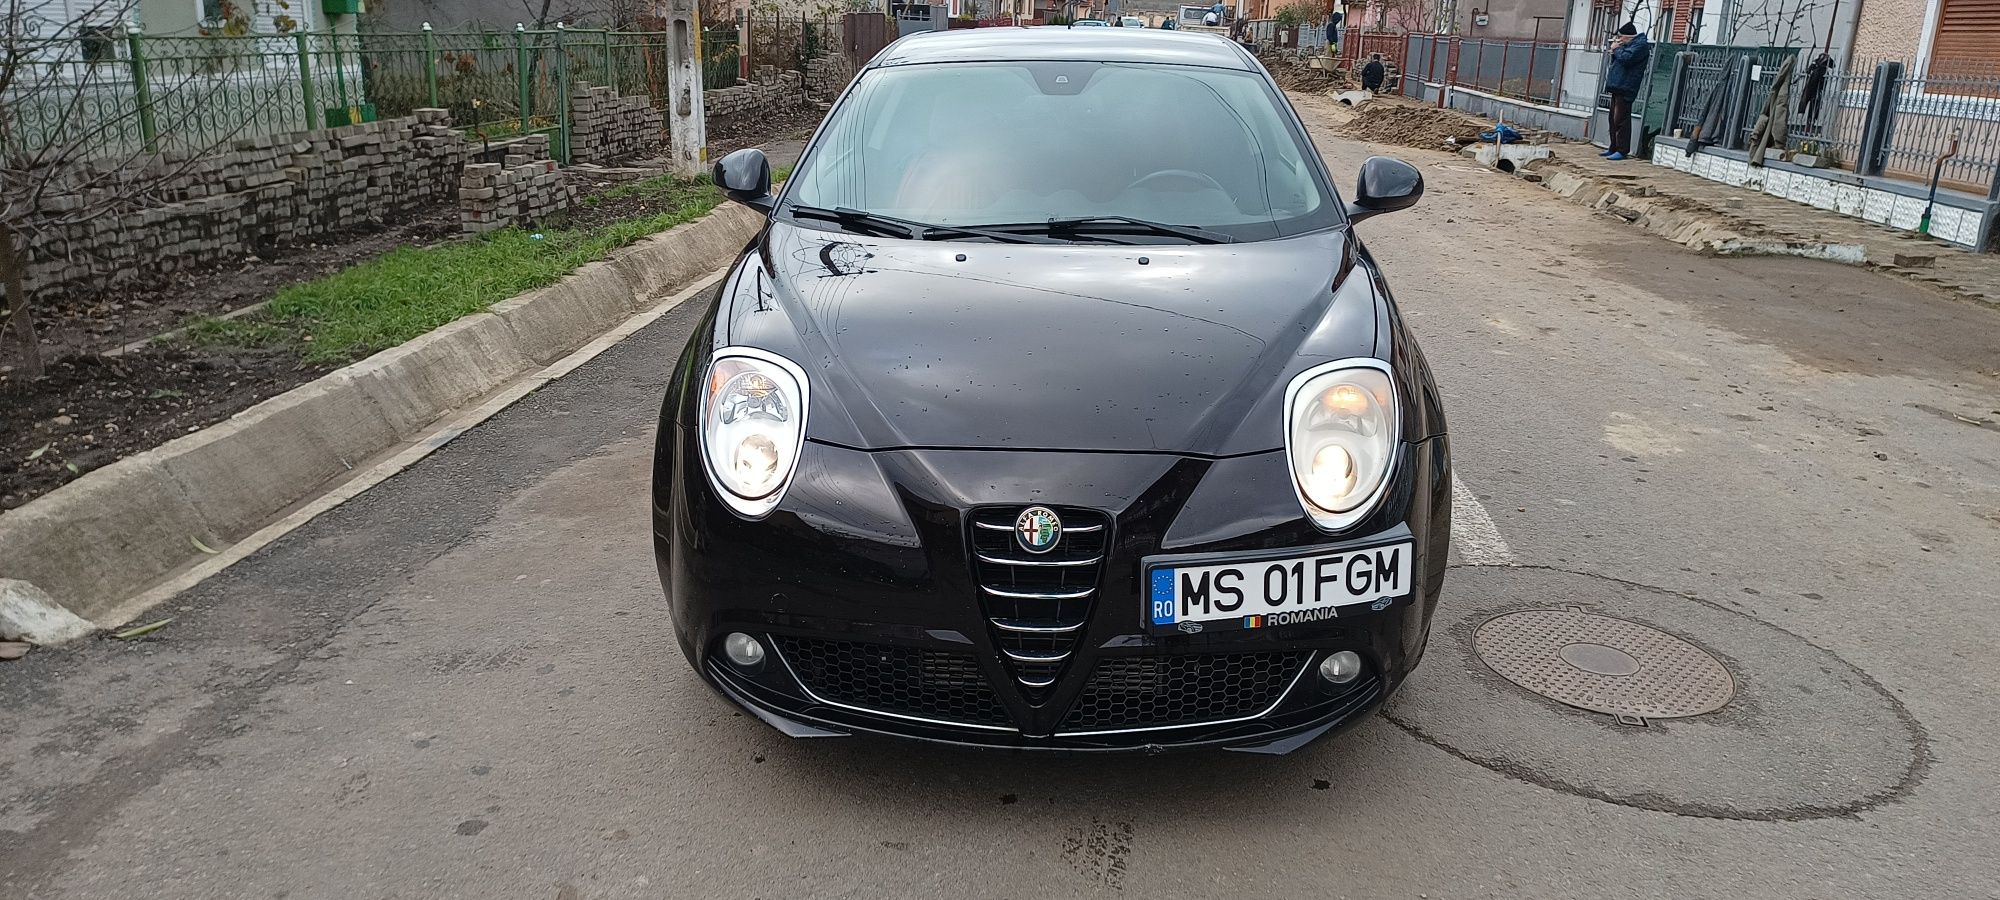 Alfa Romeo mito 1.3 diesel an 2013